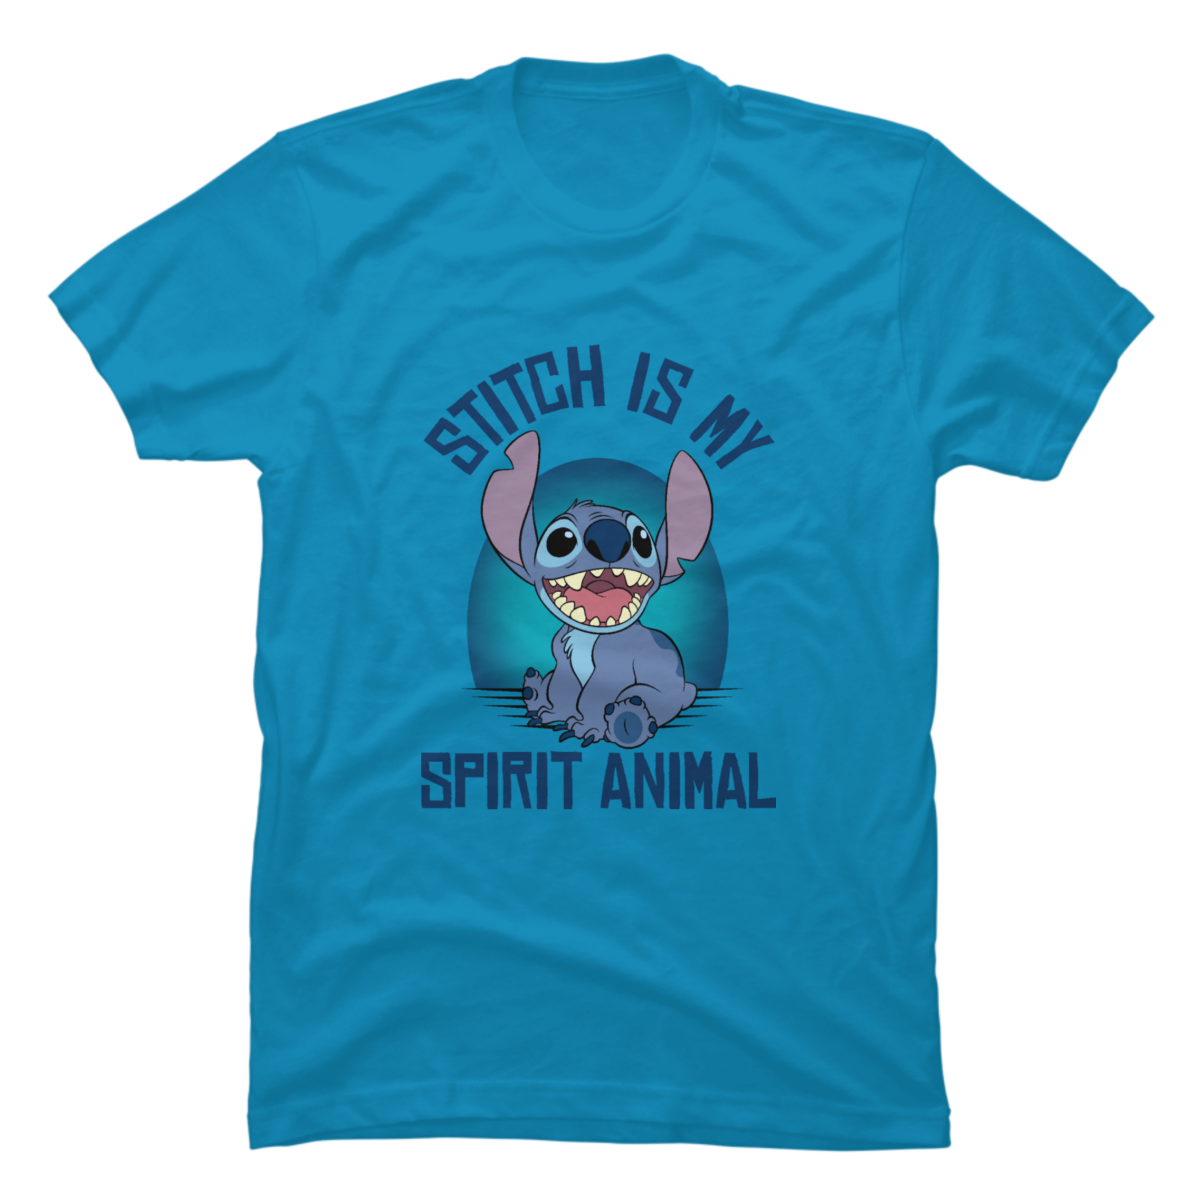 spirit animal shirts